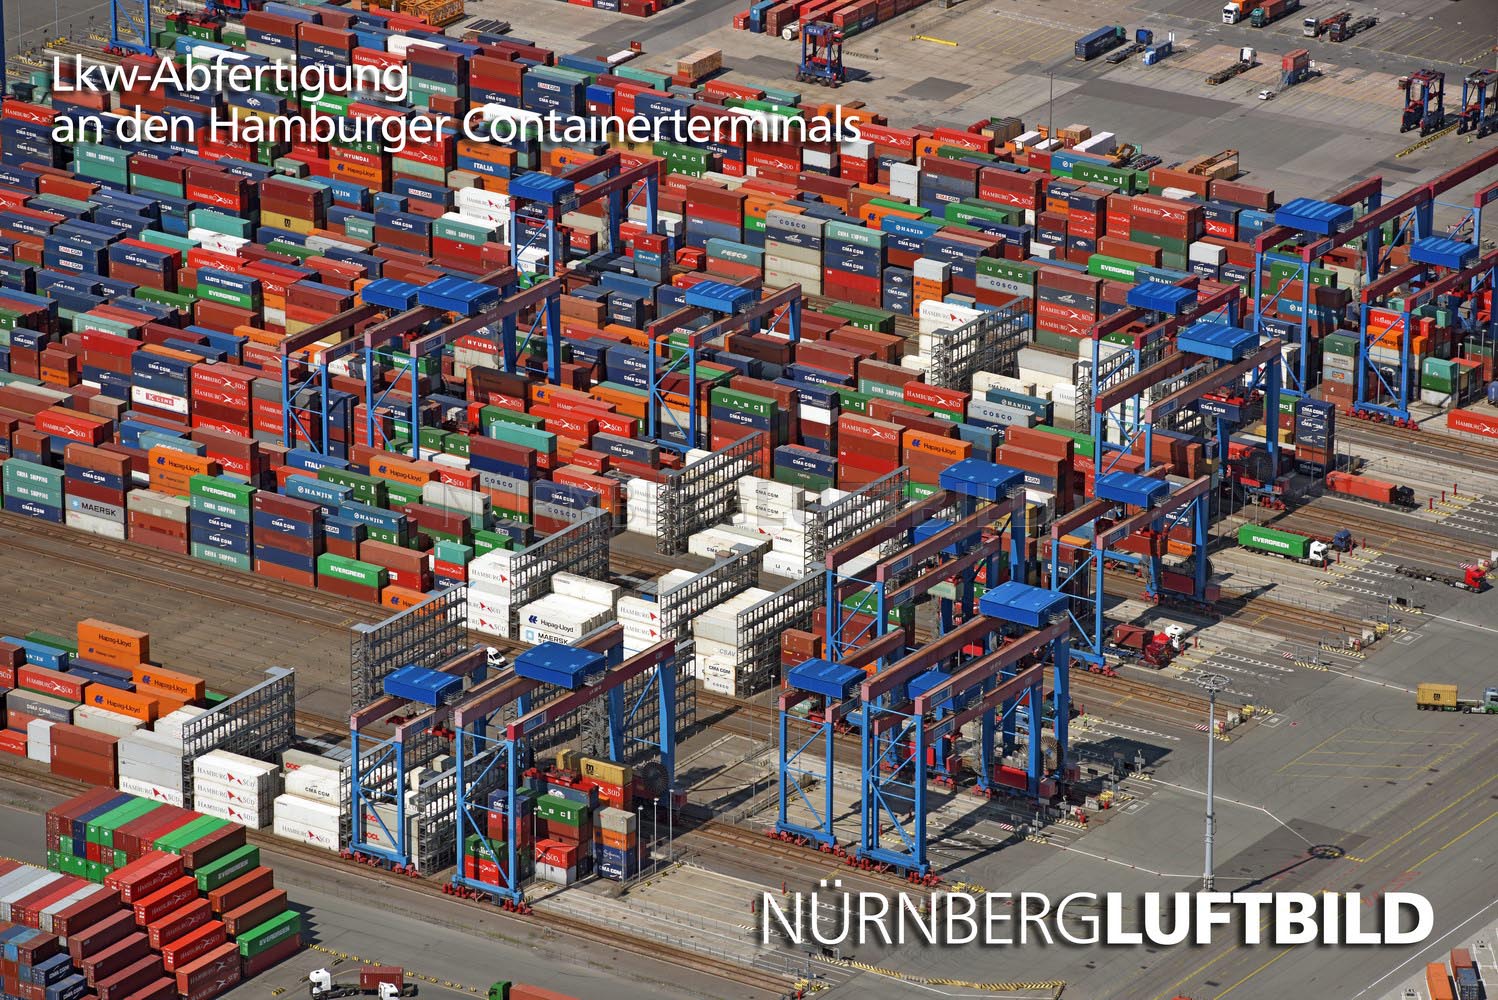 Lkw-Abfertigung an den Hamburger Containerterminals, Luftaufnahme